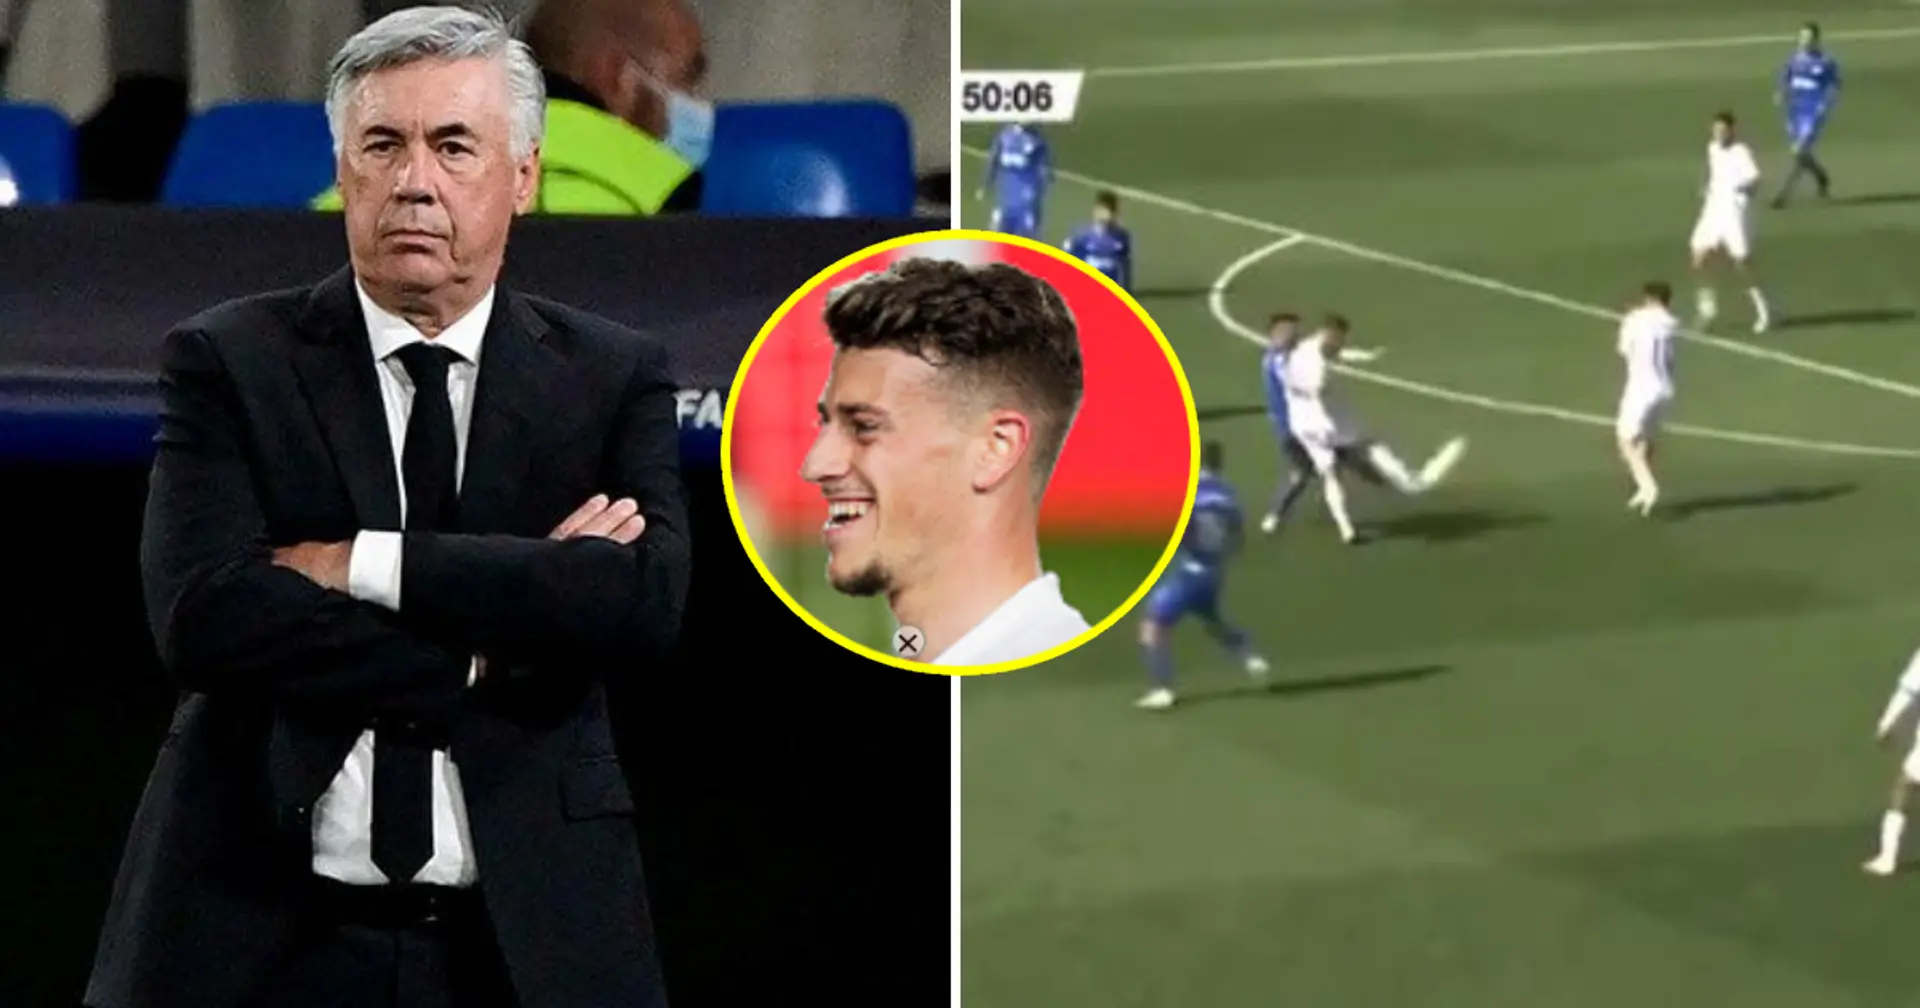 Spotted: Antonio Blanco shows Ancelotti he's got it, scores golazo for Castilla